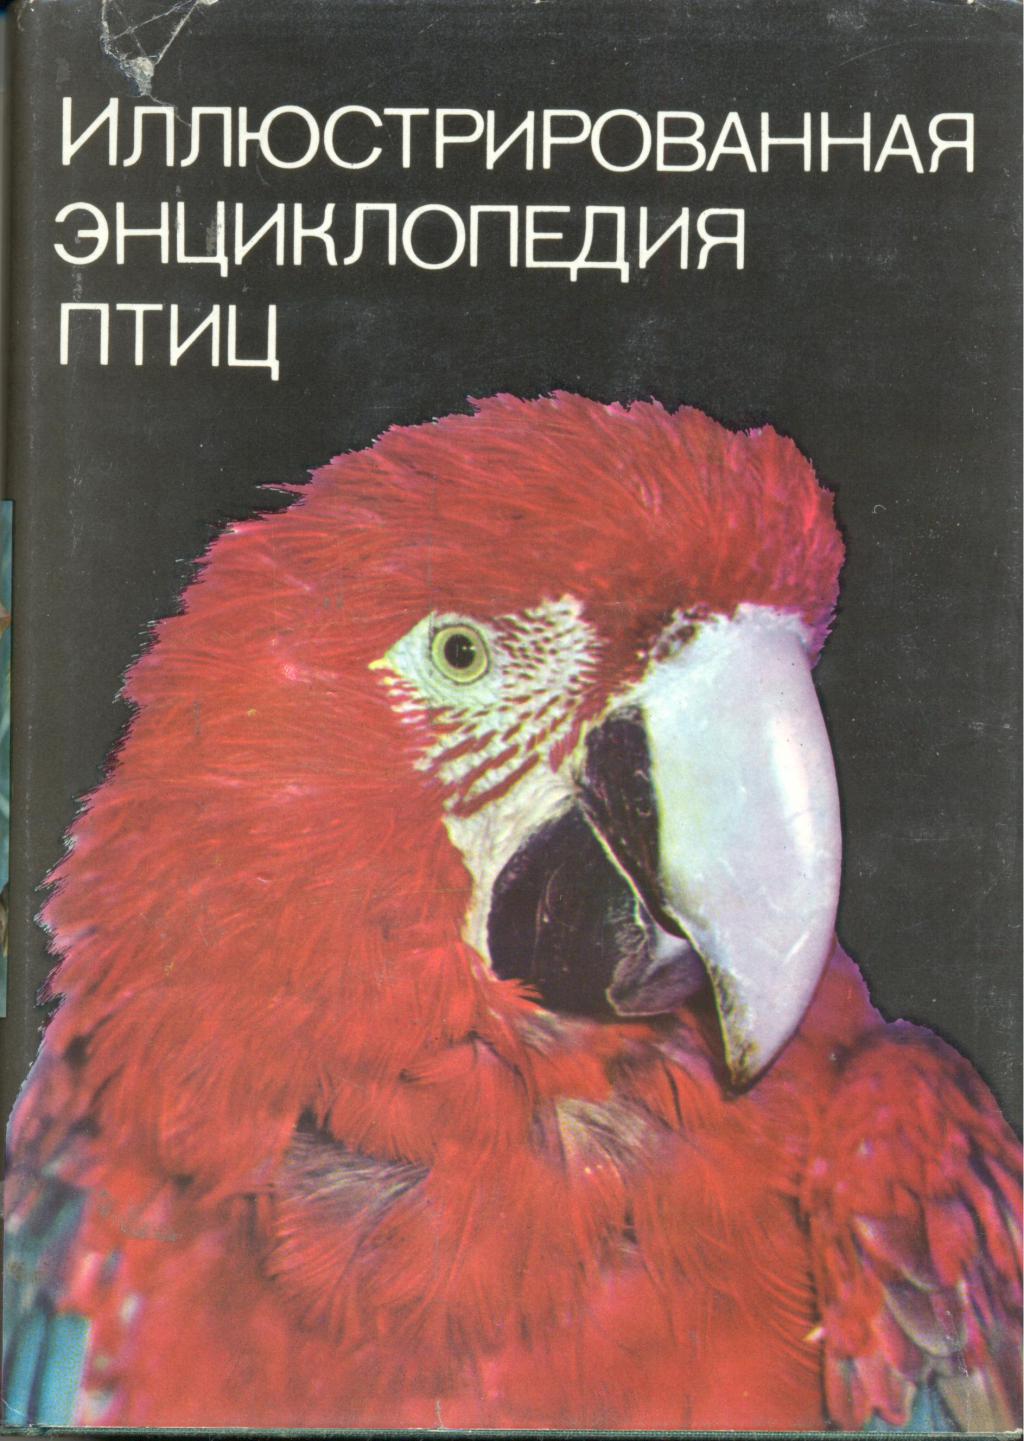 Иллюстрированная энцеклопедия птиц